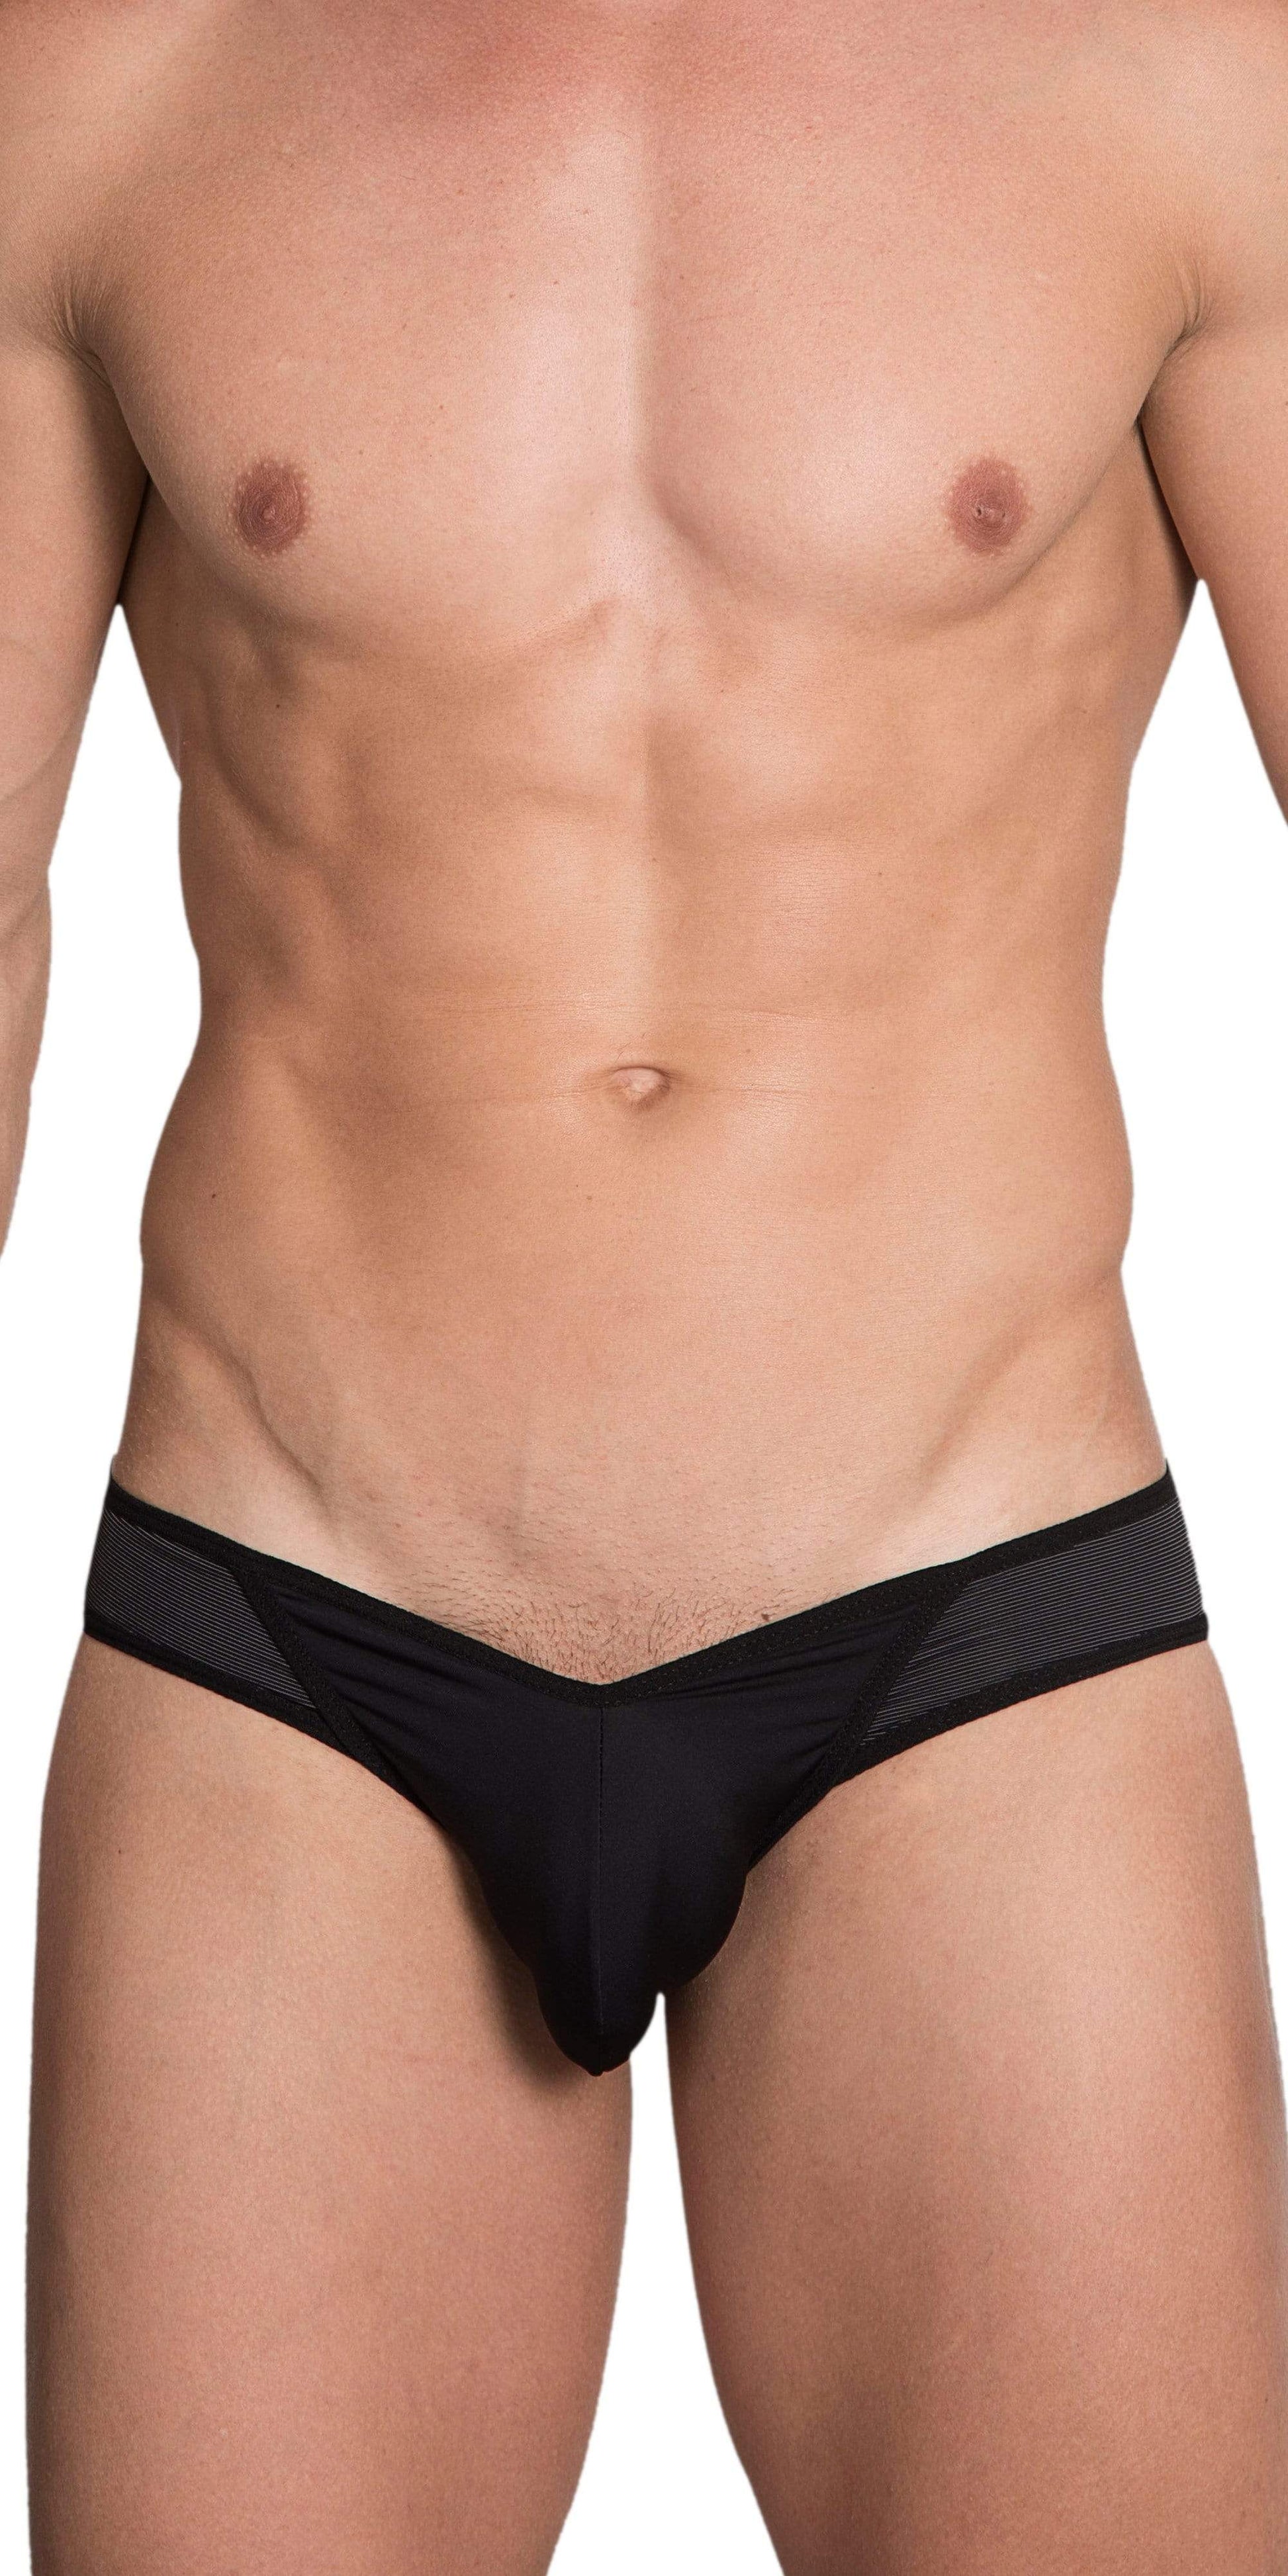 Sexy Mens Underwear - Men's Sexy Underwear For Sale – Page 38 –   - Men's Underwear and Swimwear